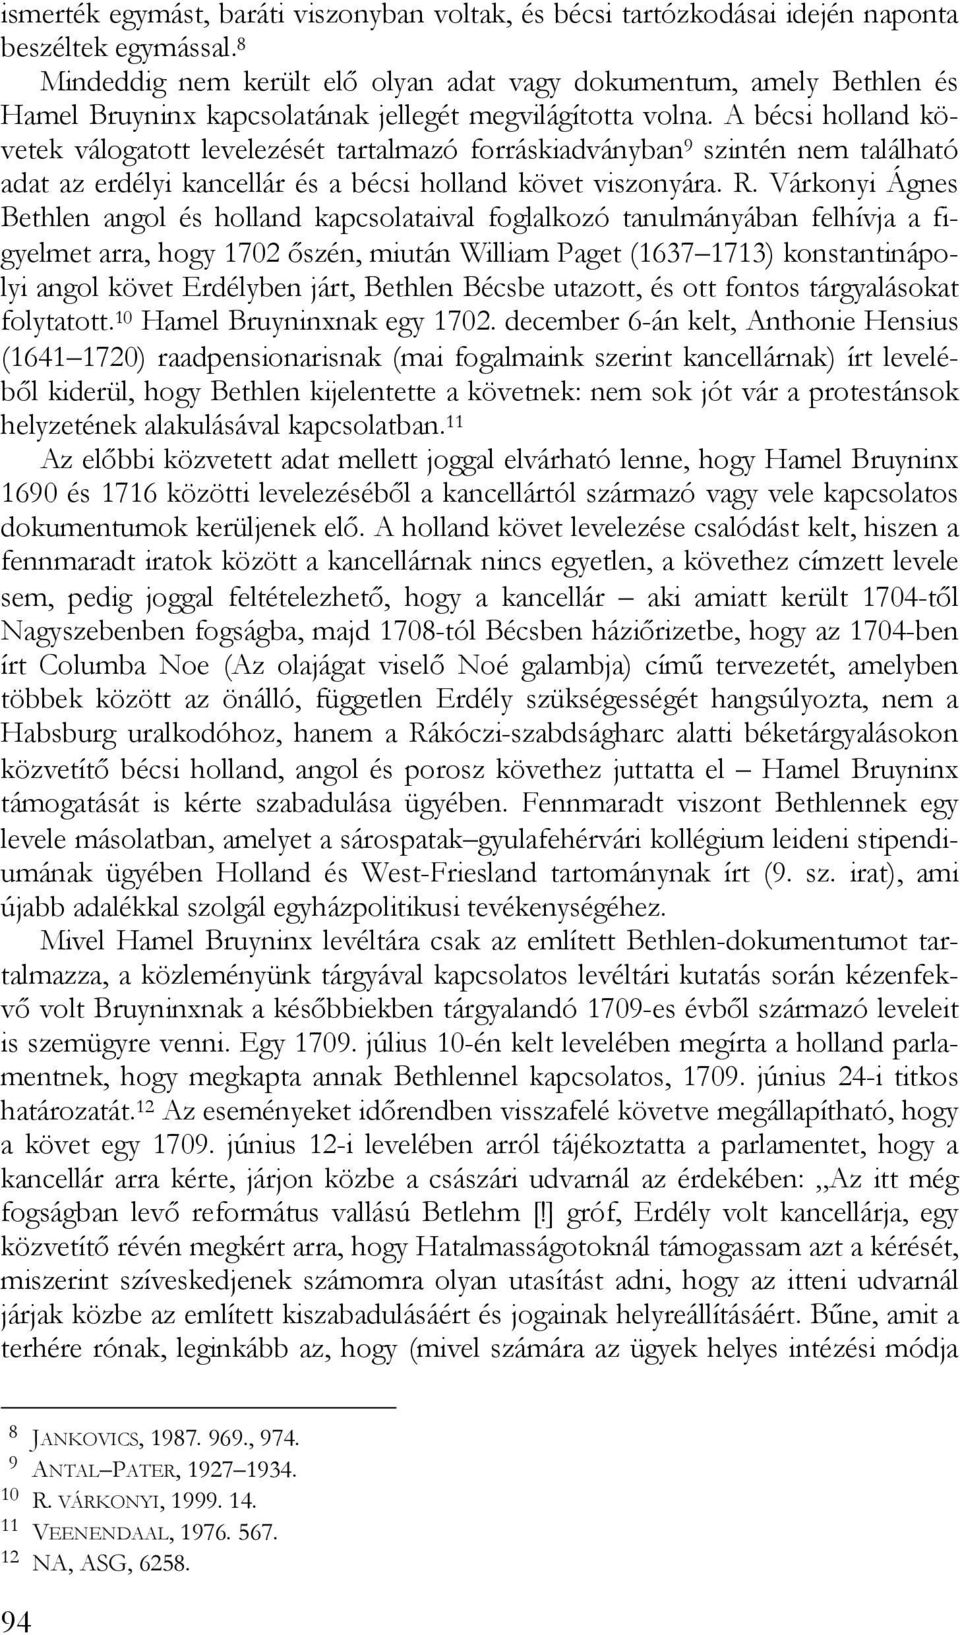 A bécsi holland követek válogatott levelezését tartalmazó forráskiadványban 9 szintén nem található adat az erdélyi kancellár és a bécsi holland követ viszonyára. R.